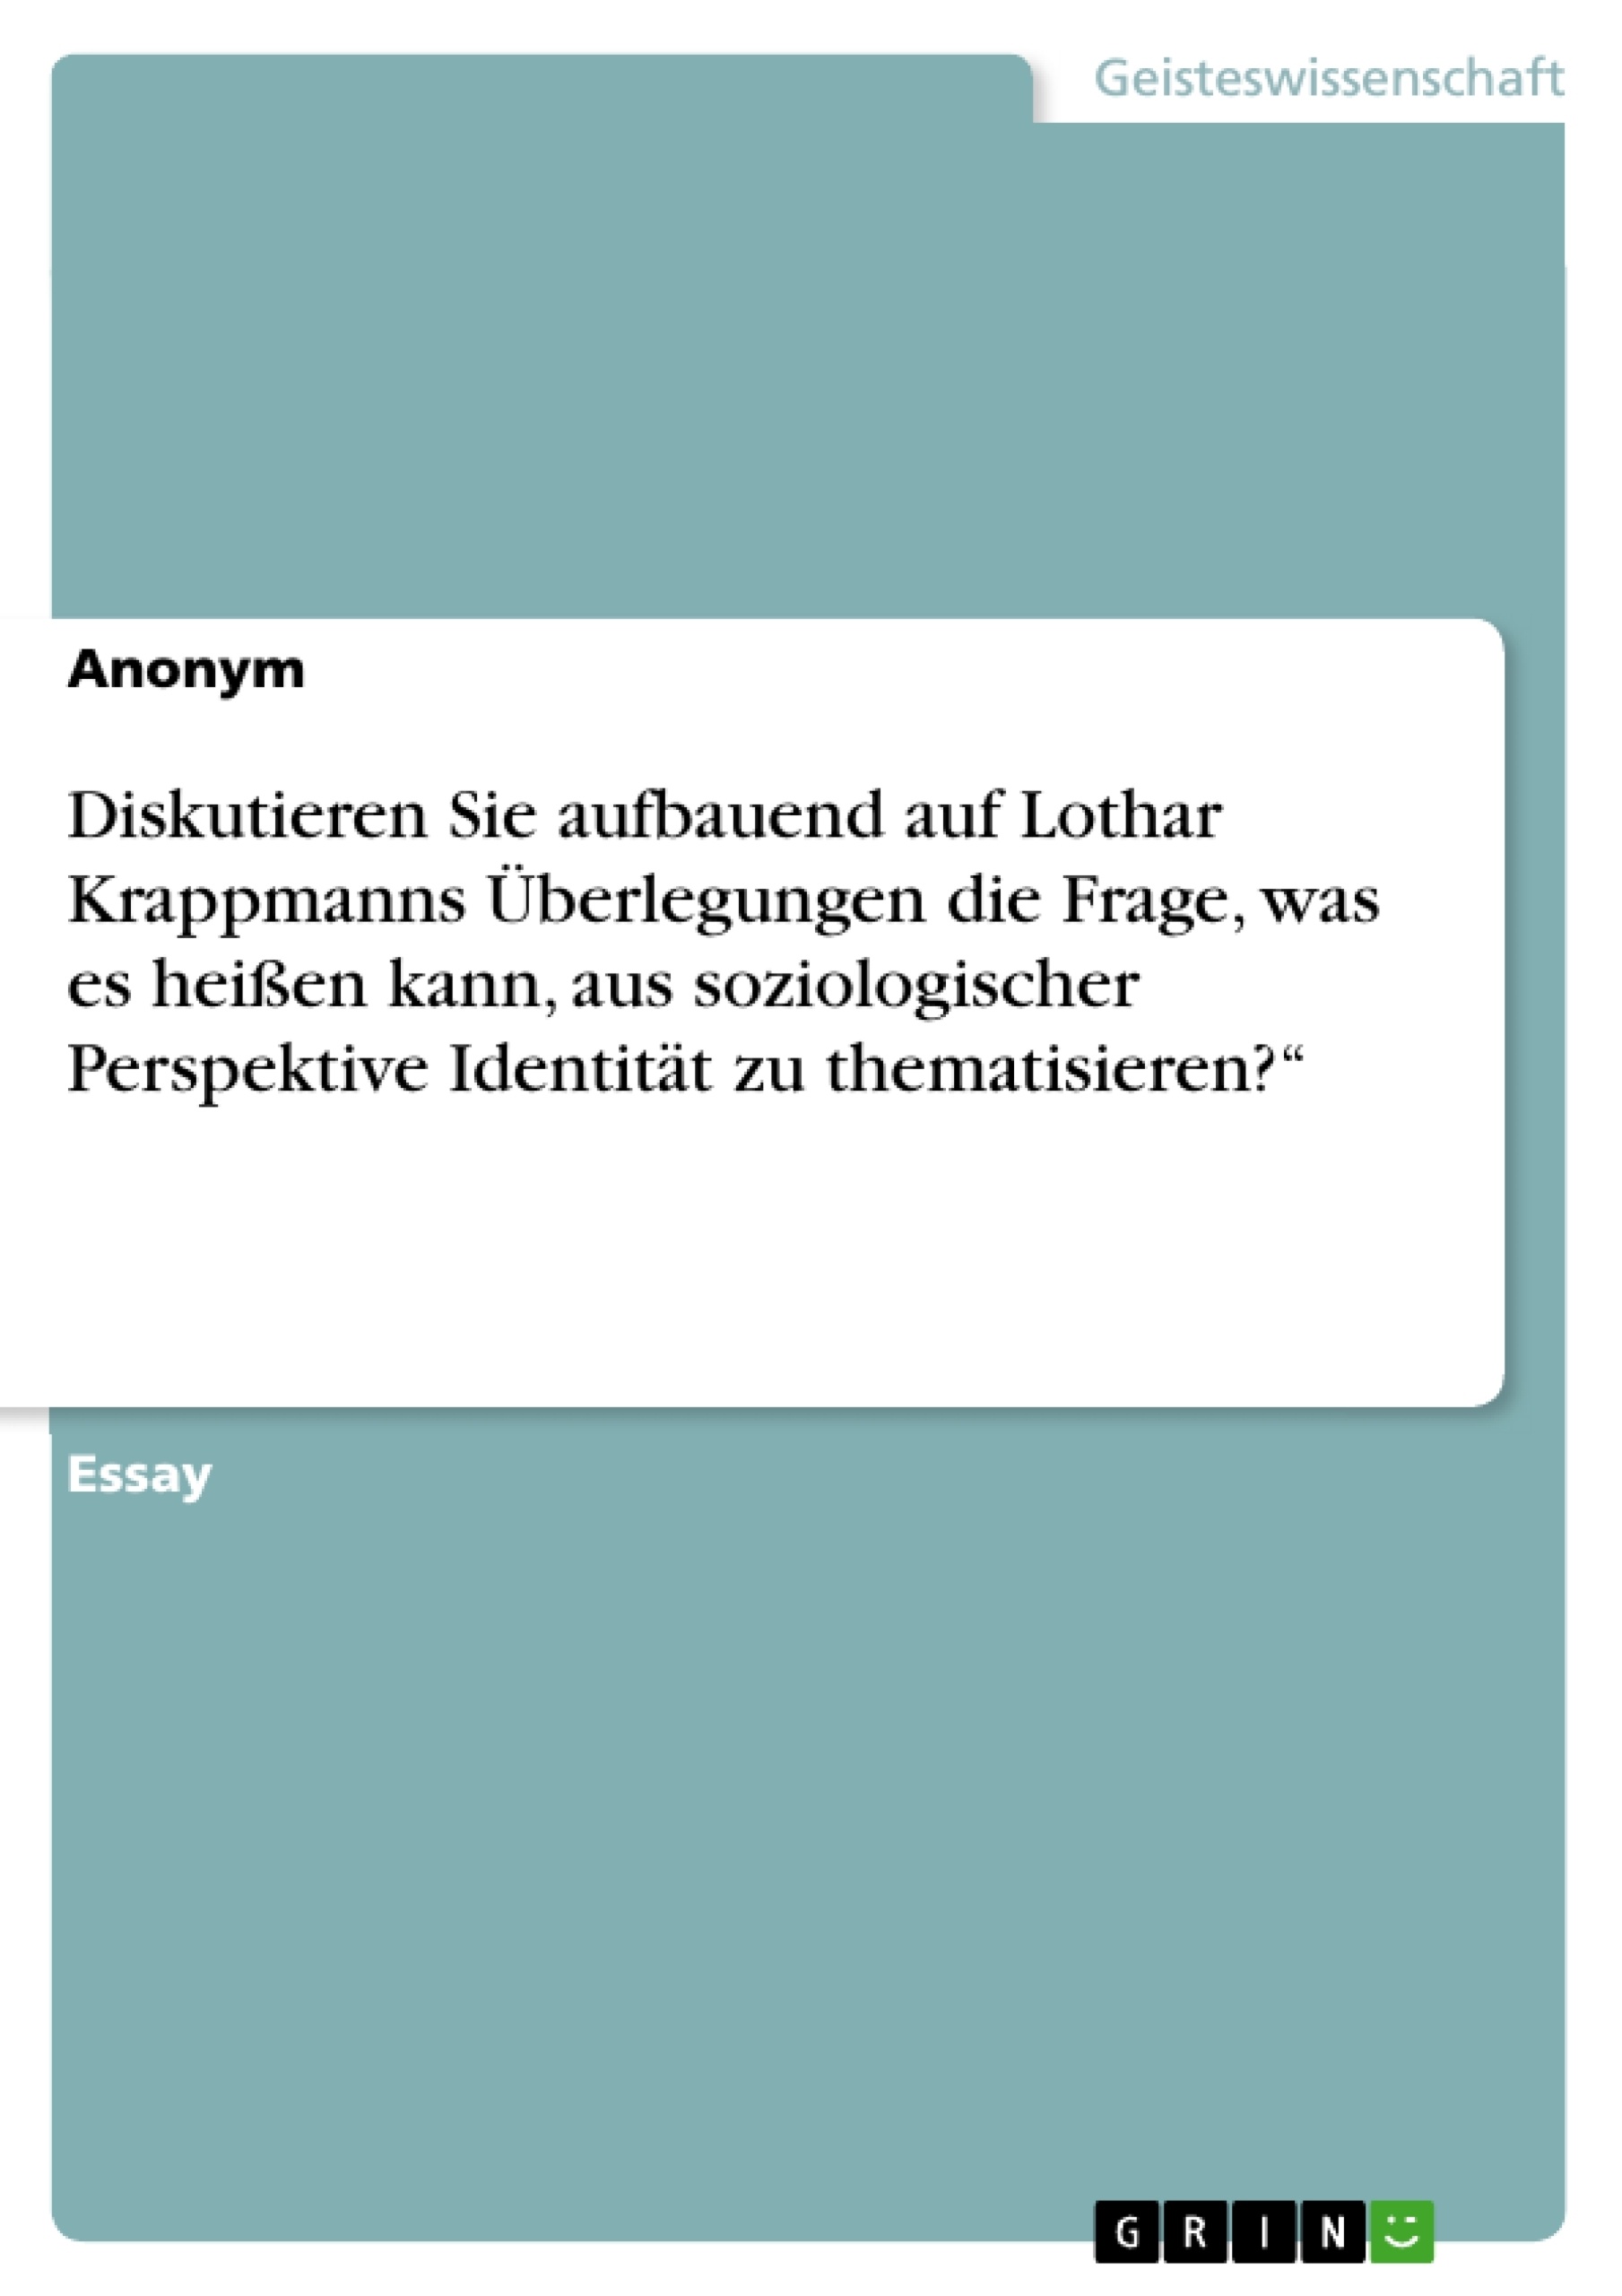 Title: Diskutieren Sie aufbauend auf Lothar Krappmanns Überlegungen die Frage, was es heißen kann, aus soziologischer Perspektive Identität zu thematisieren?“